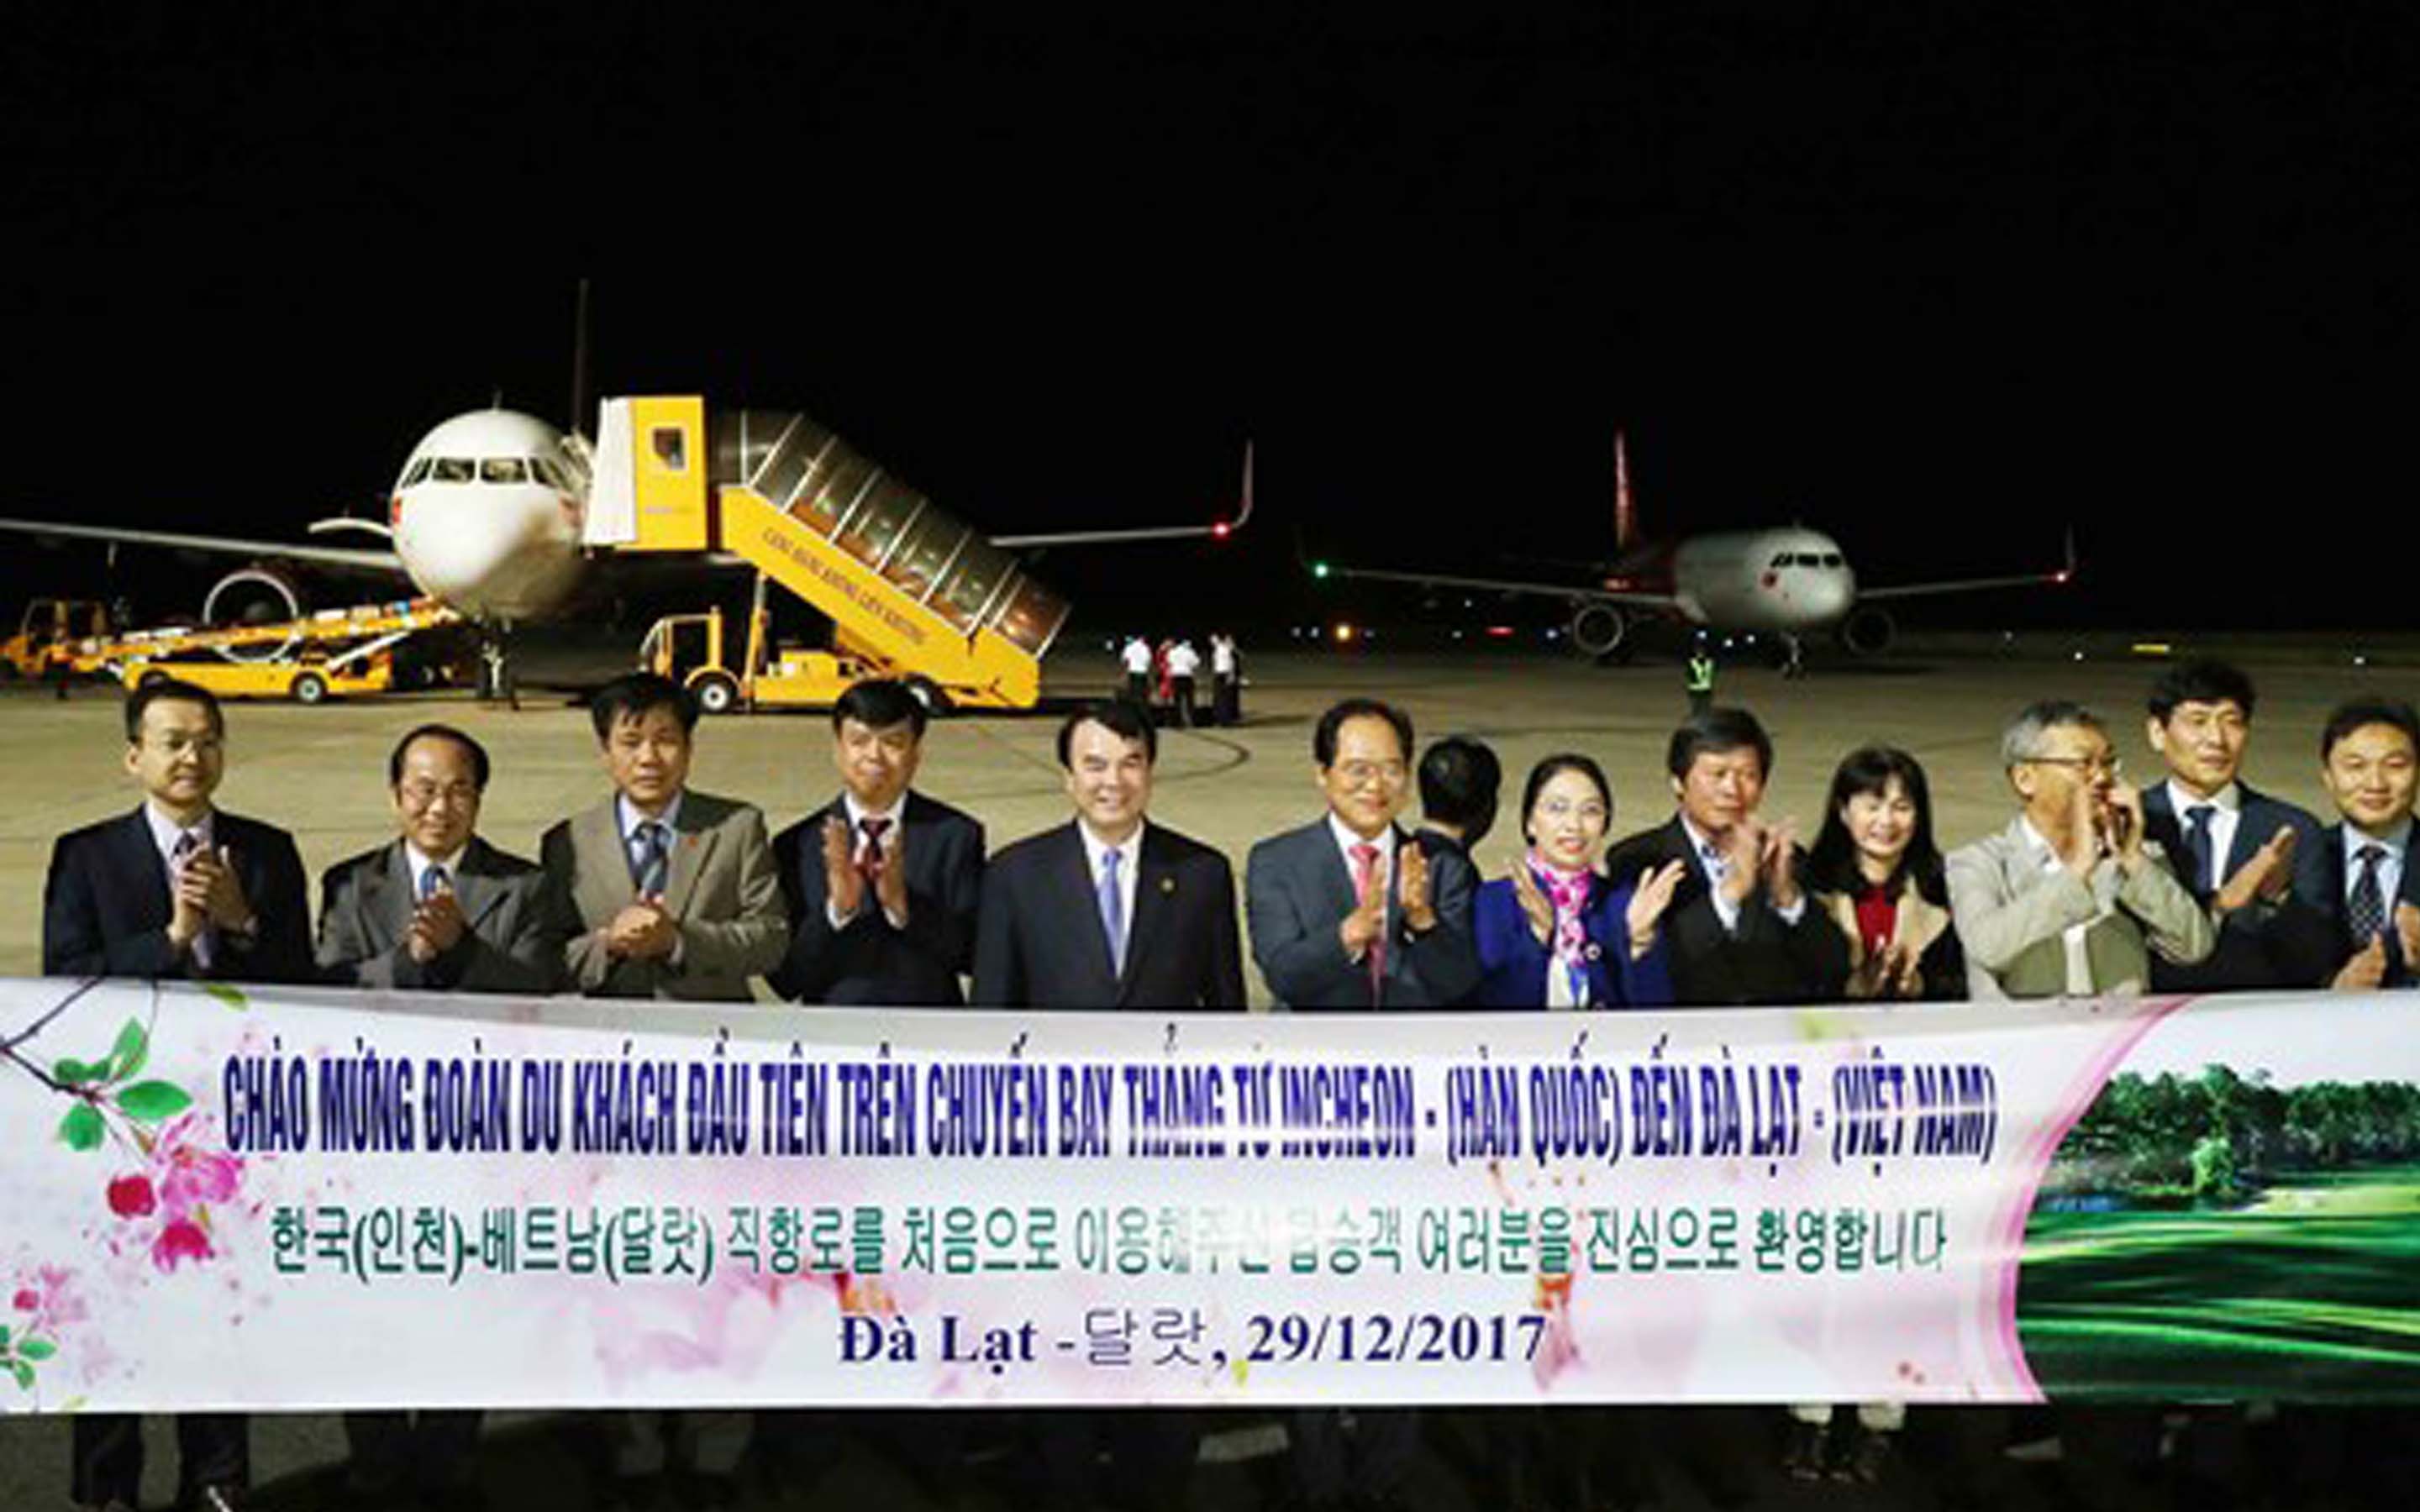 Lễ chào mừng mở đường bay Incheon - Đà Lạt